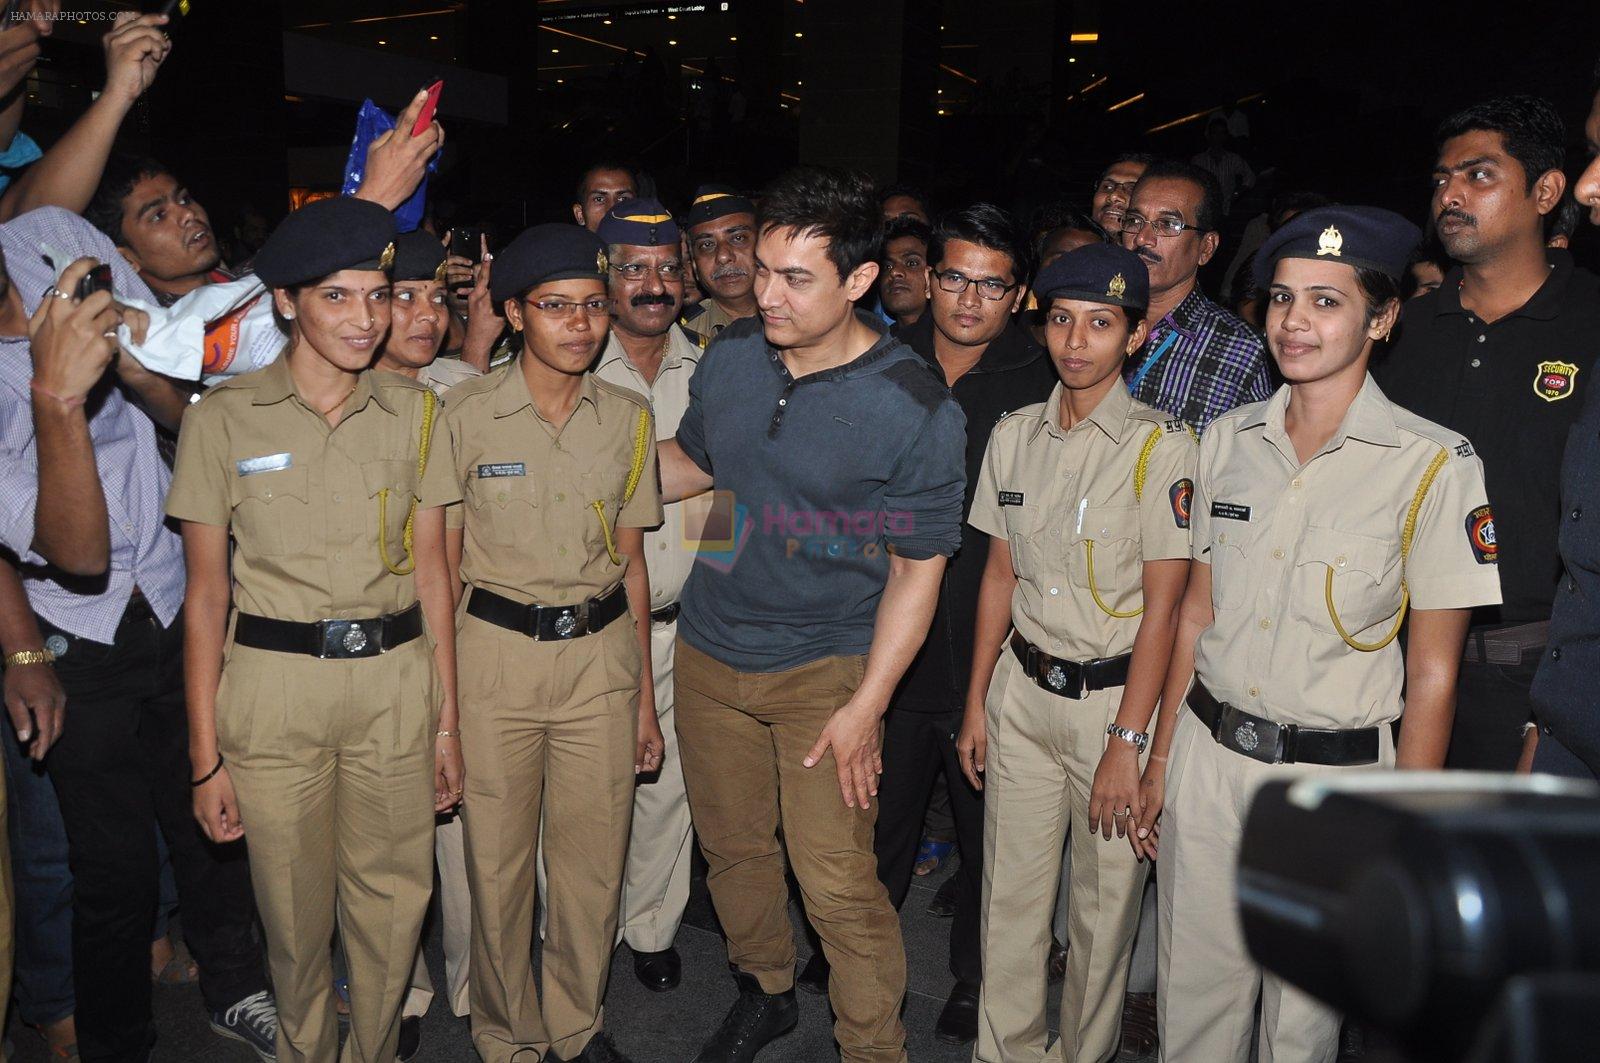 Aamir Khan at PK Screening in Mumbai on 18th Dec 2014